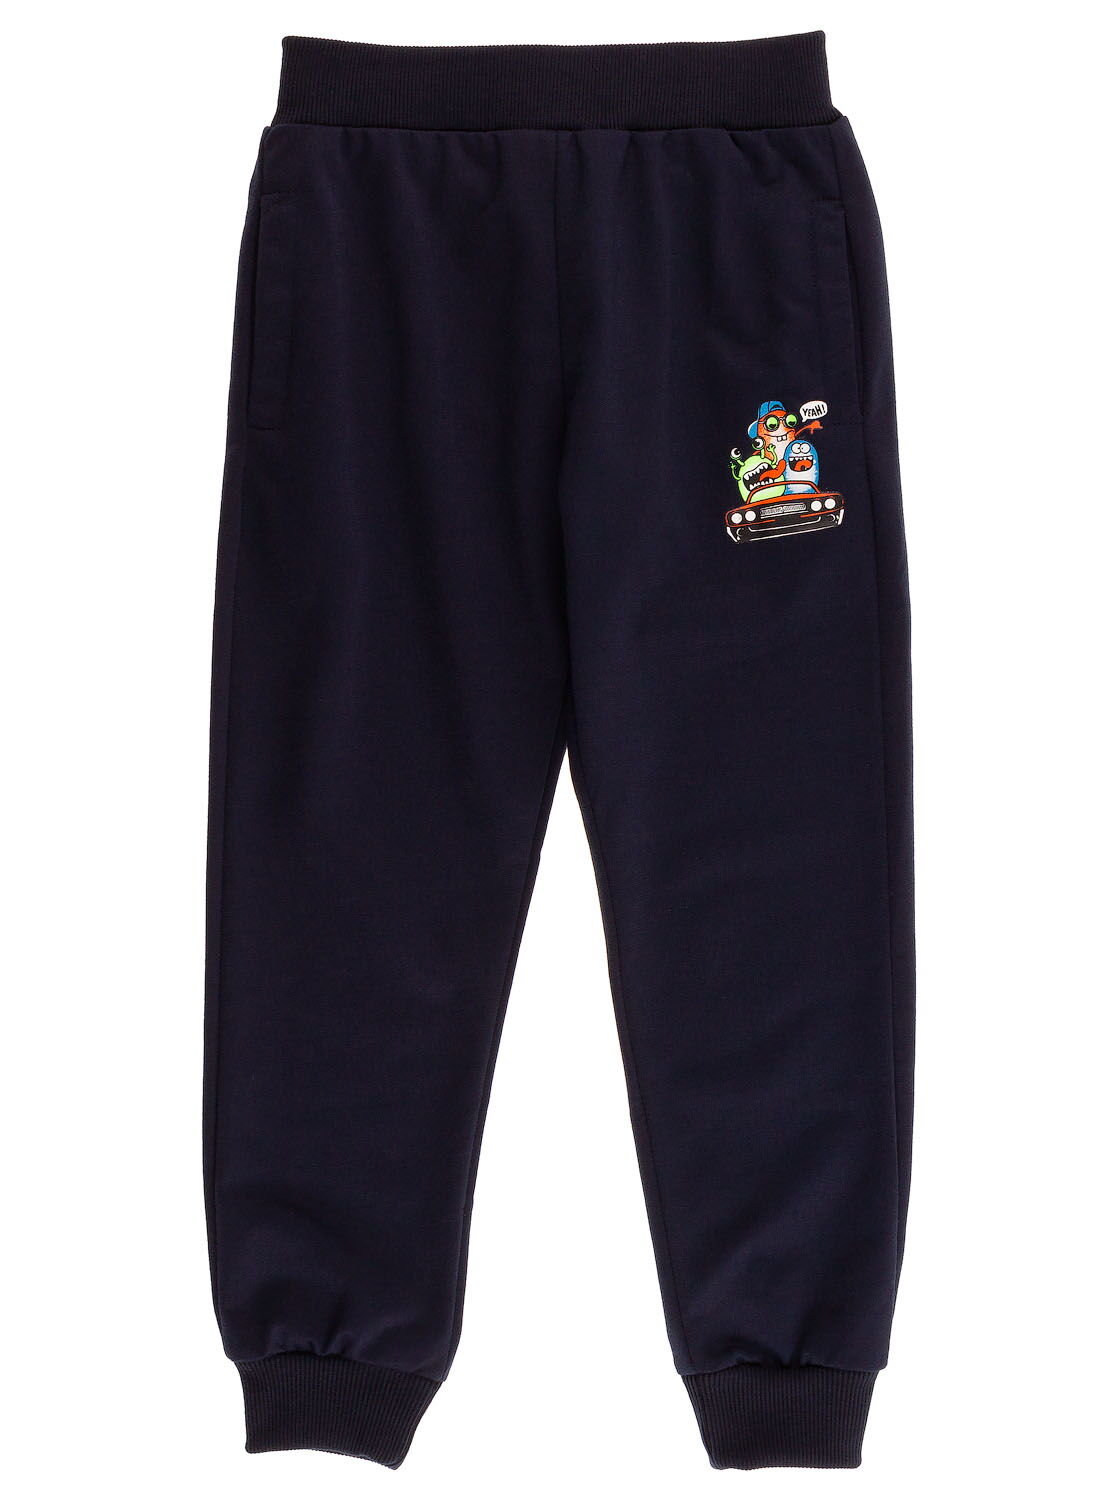 Спортивные штаны для мальчика Sincere темно-синие 2308 - цена